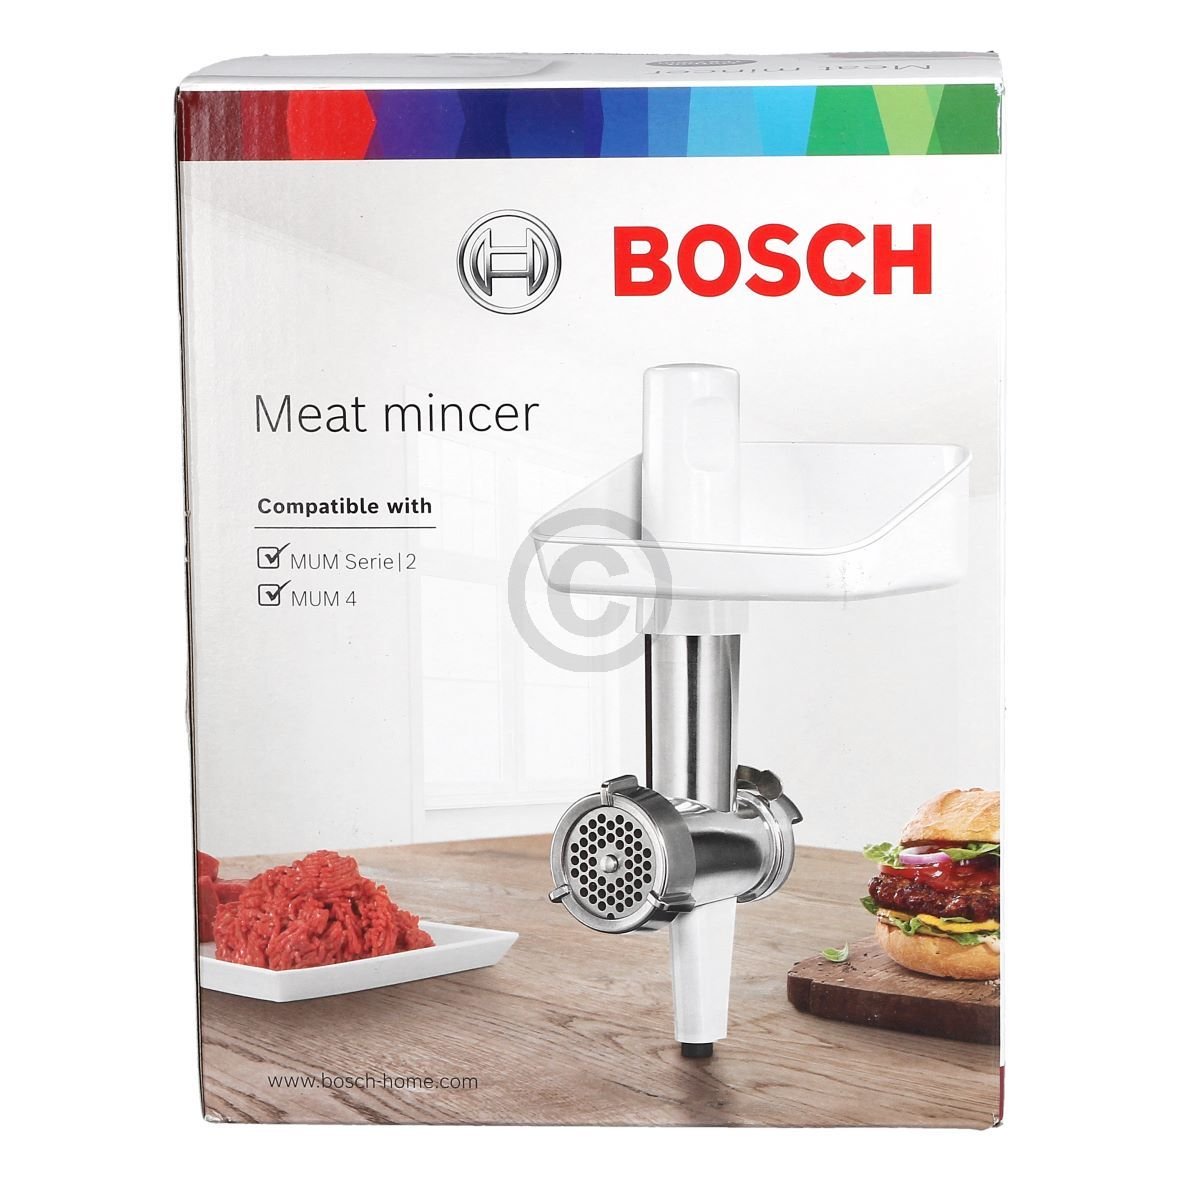 Kødhakker BOSCH MUZS2FWW 17005535 til Køkkenmaskin passer til Bosch